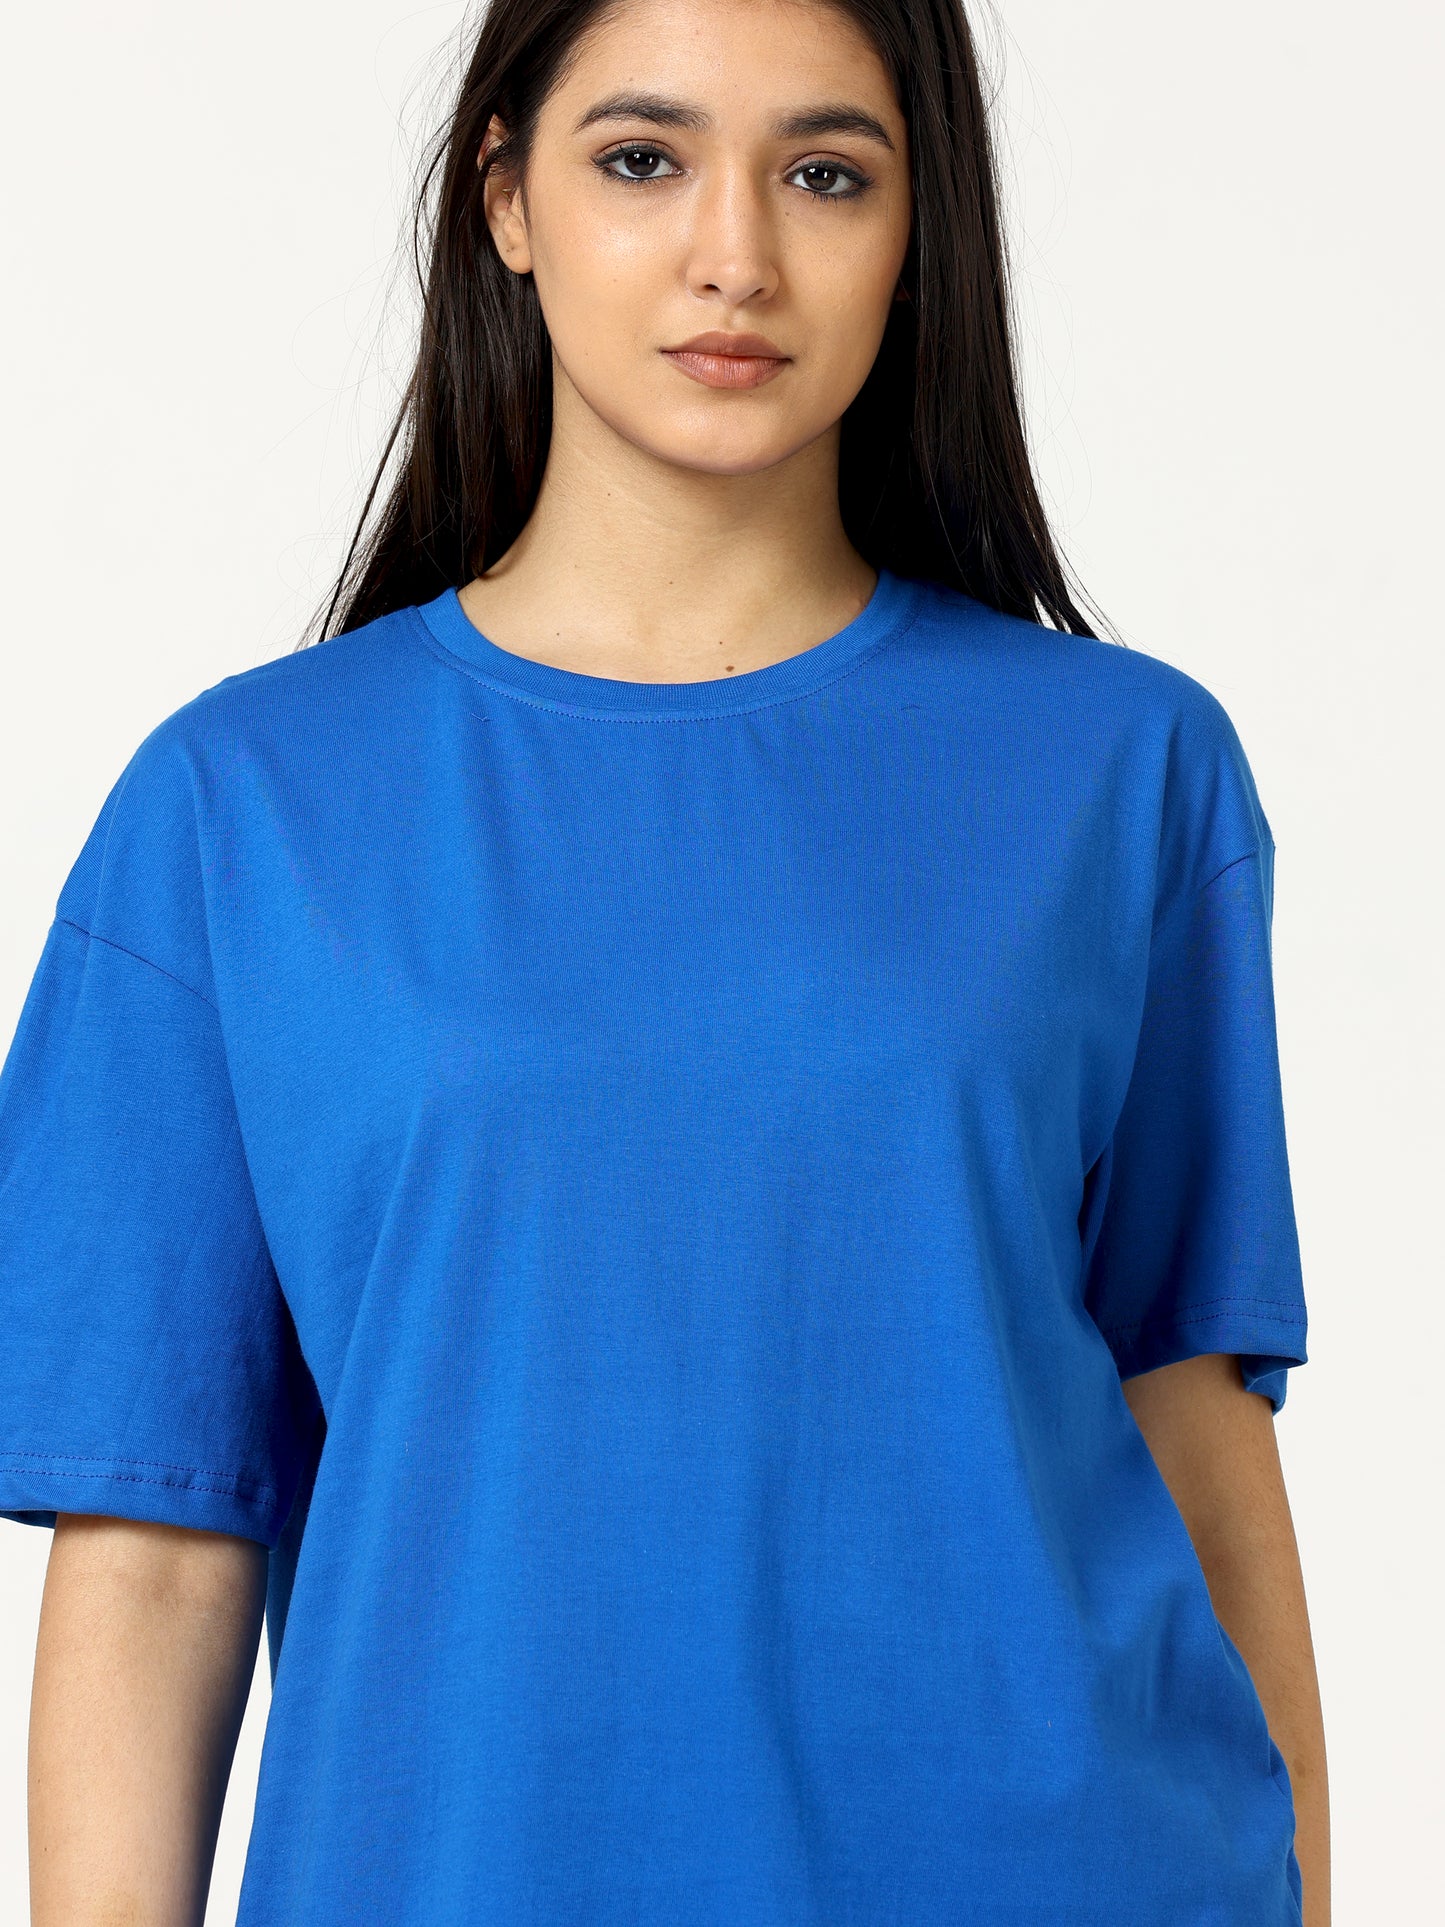 Royal Blue Oversized T-shirt - UNISEX